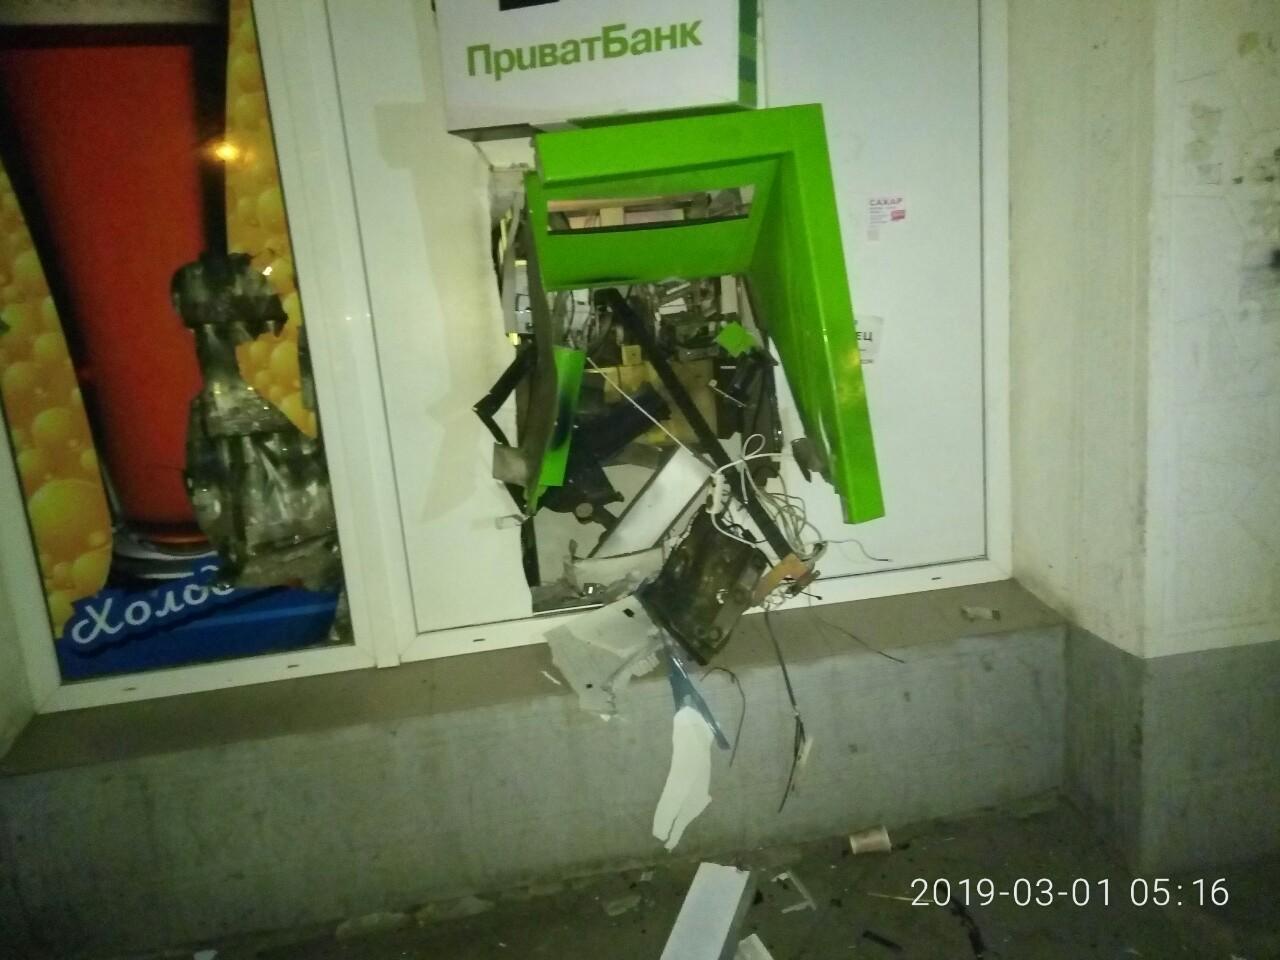 Подрыв банкомата в Запорожье: компания пообещала выплатить 50 тысяч гривен за информацию о причастных к событию (Фото)